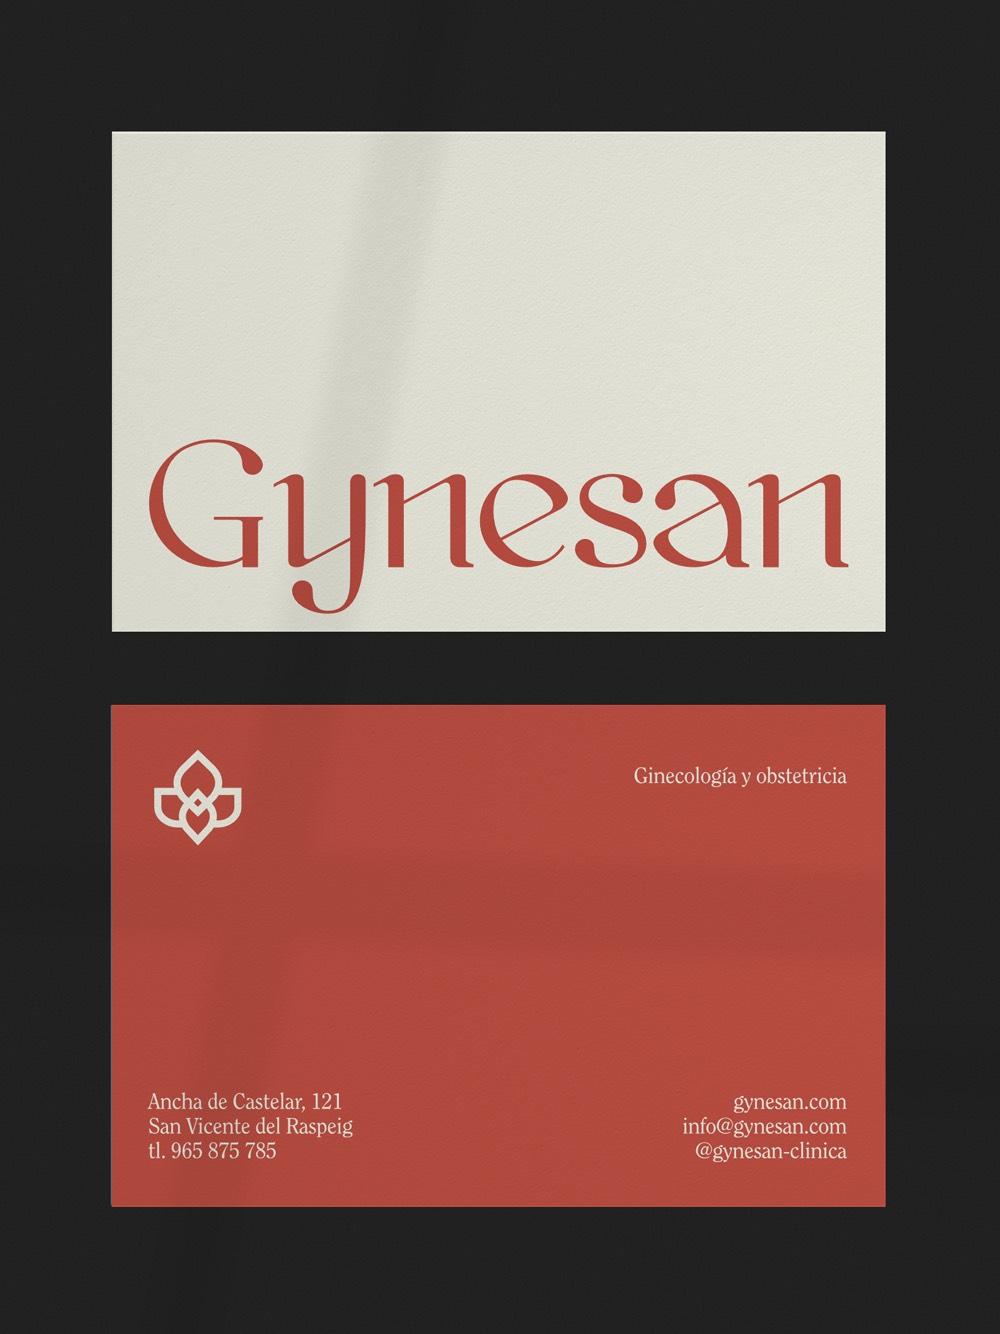 Diseño y desarrollo de identidad visual corporativa para Gynesan. Tarjeta de visita.